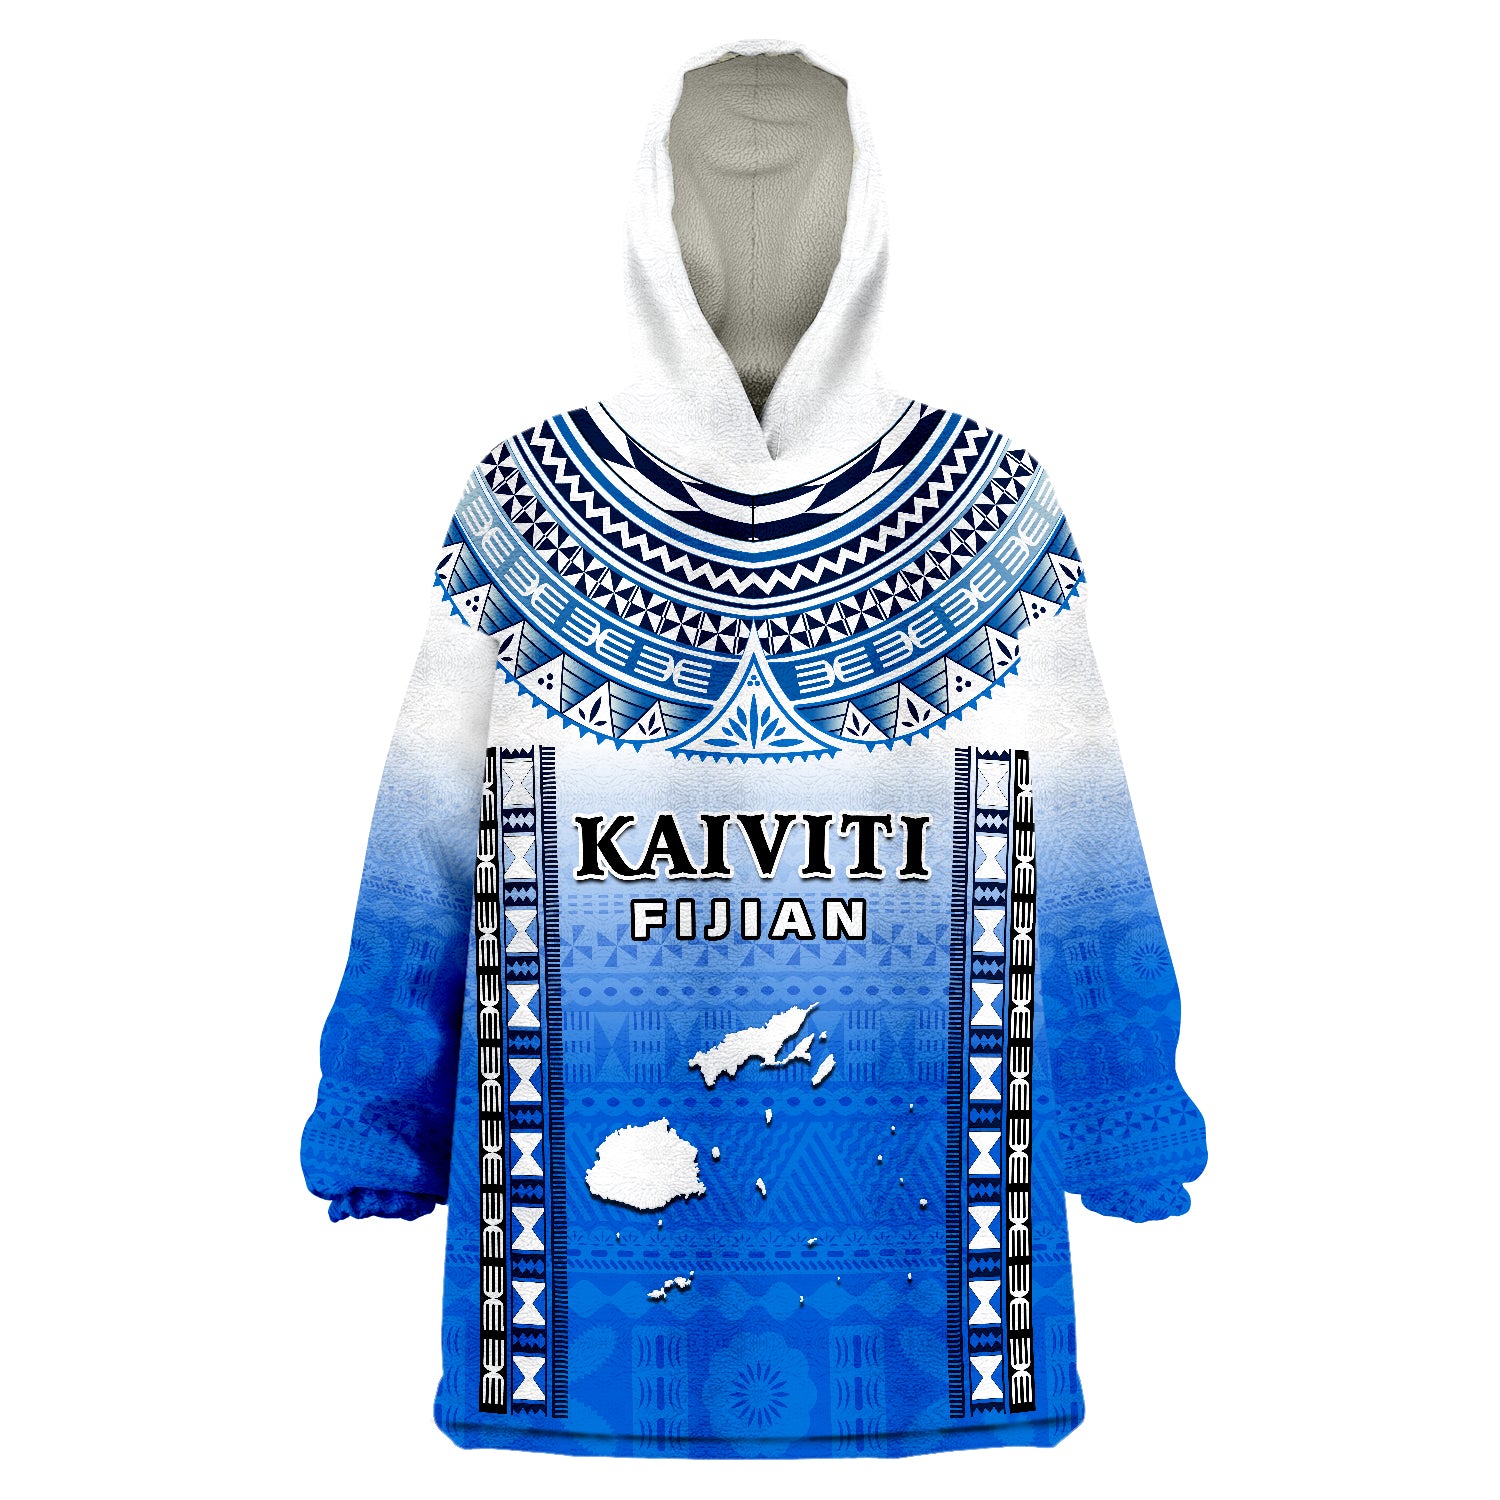 fiji-kaiviti-fijian-special-tapa-pattern-wearable-blanket-hoodie